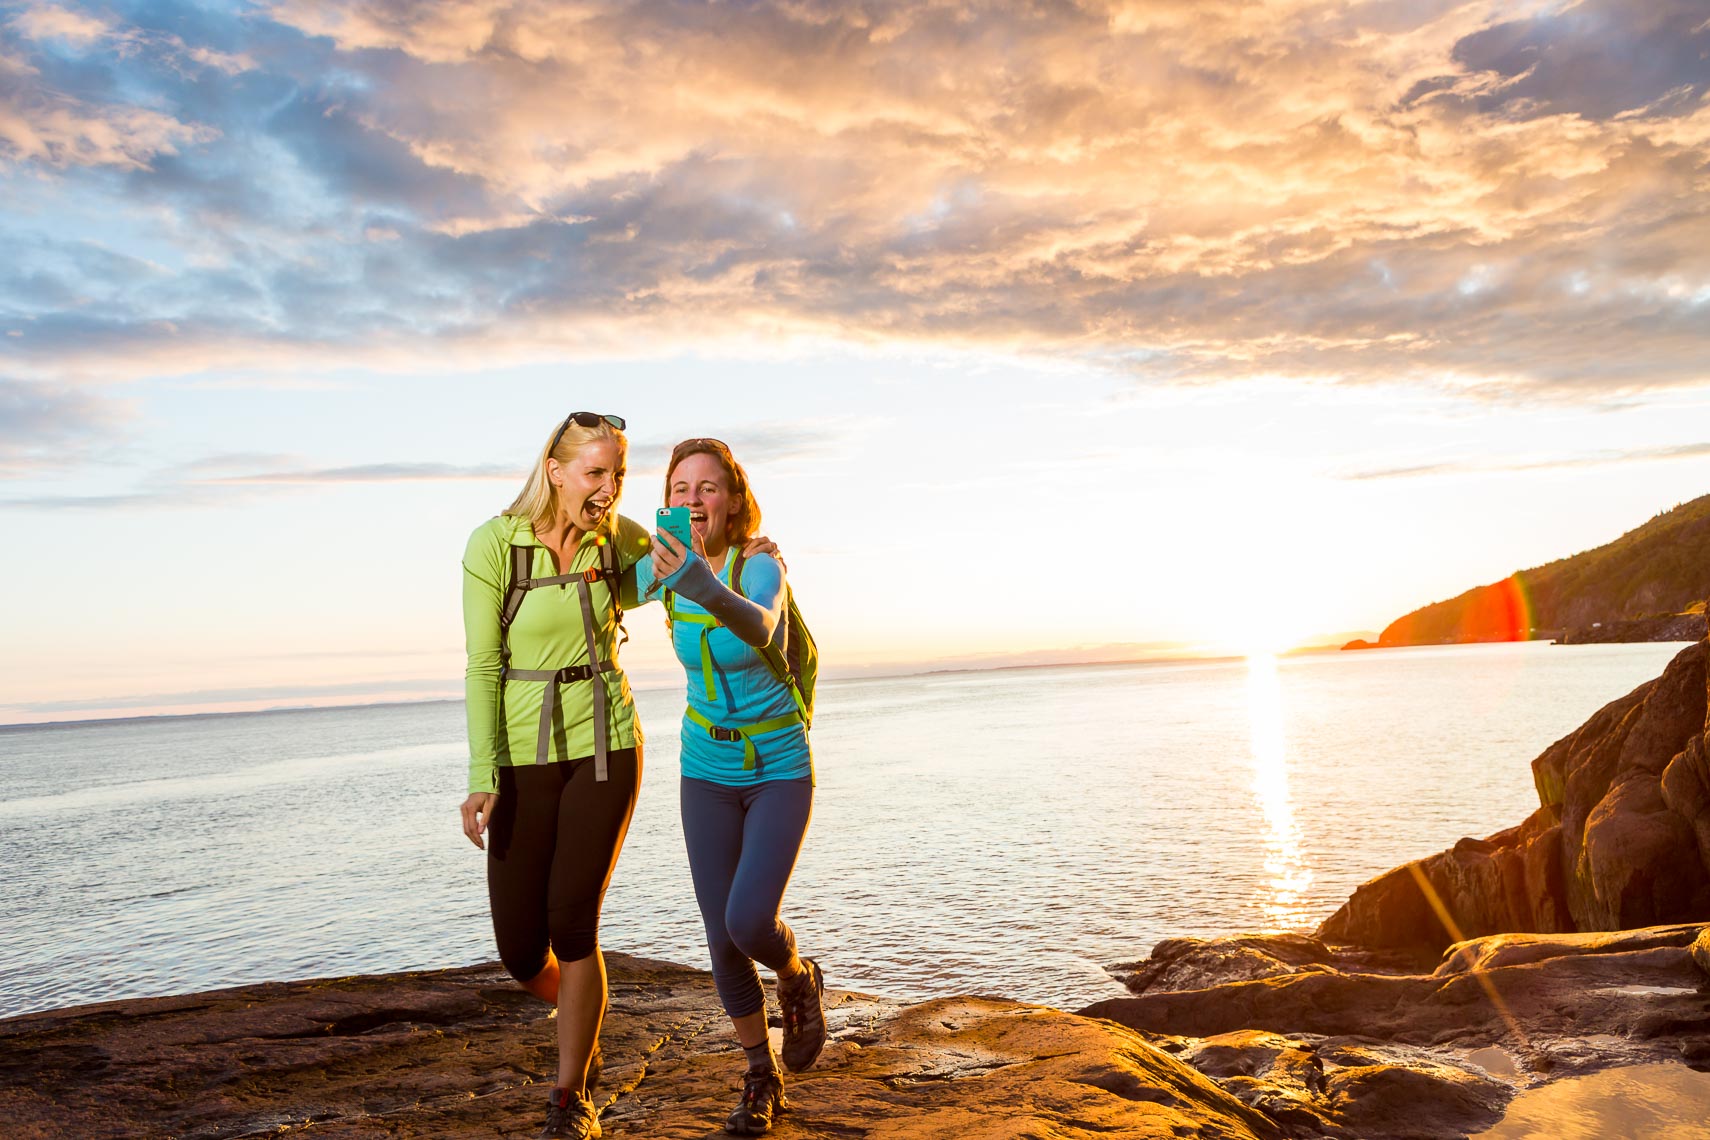 Alaska Friends Sunset Selfie | Photographer Michael DeYoung